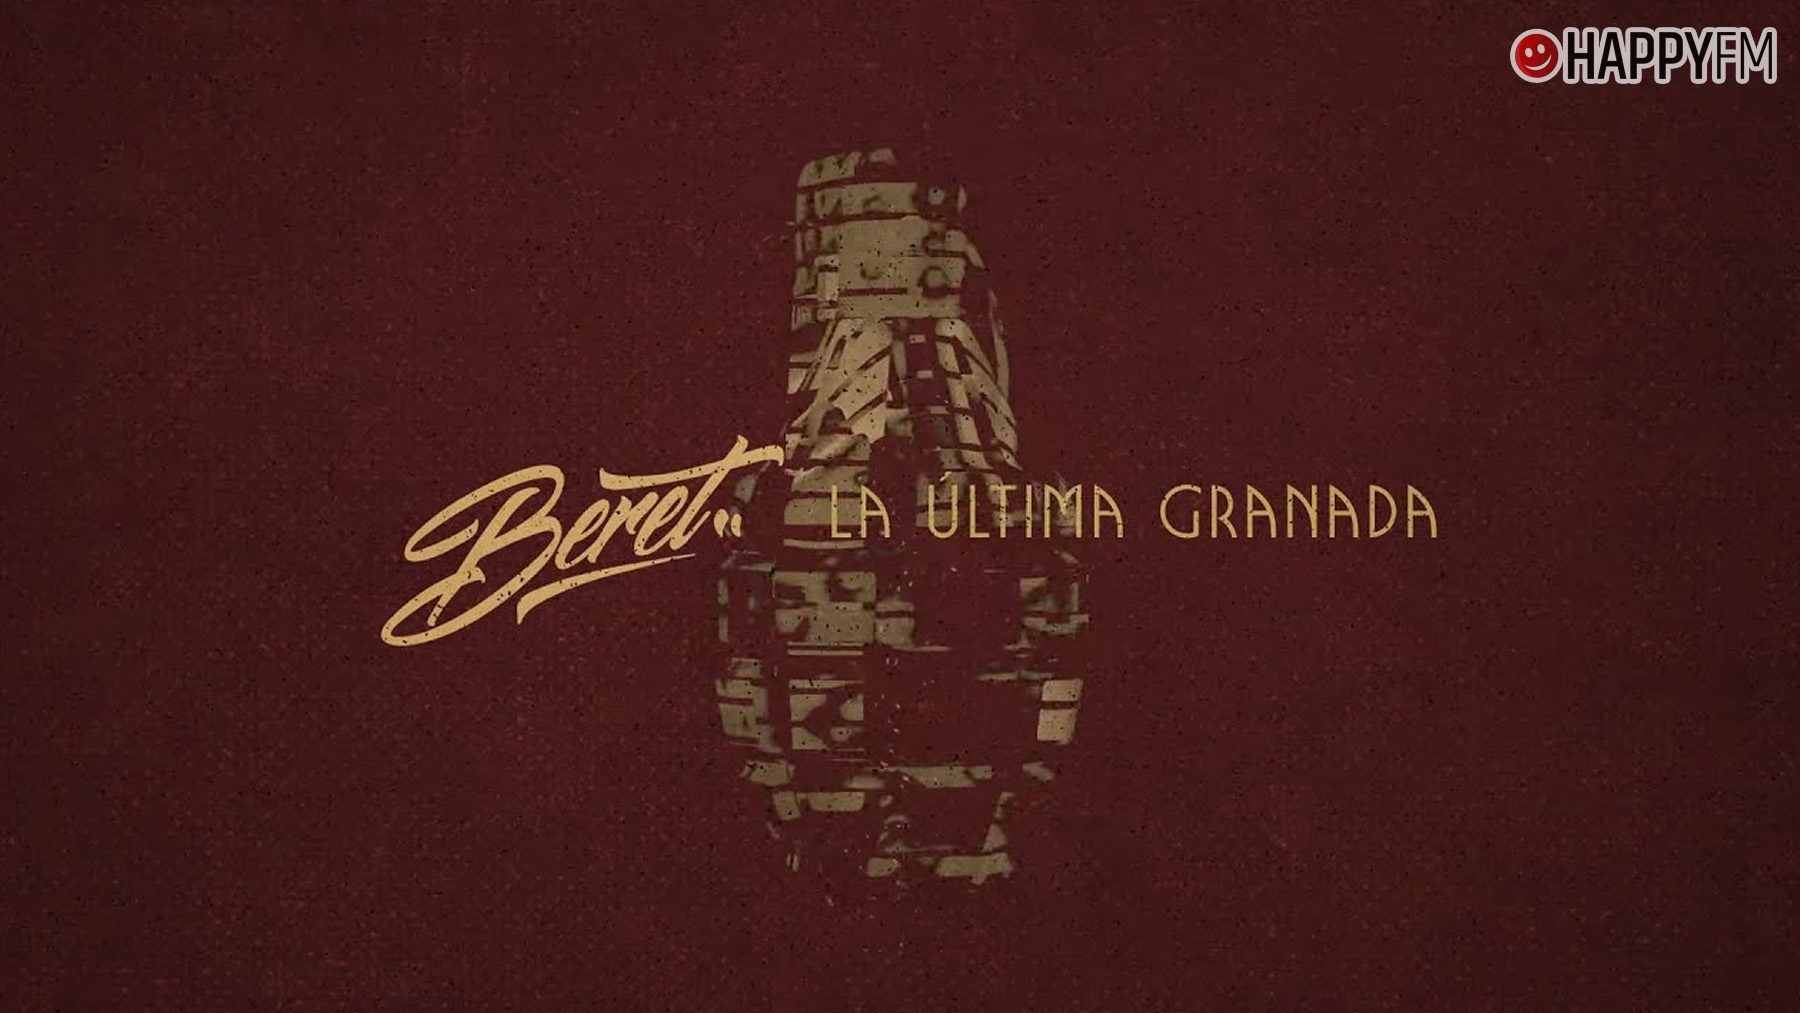 ‘La última granada’, de Beret: letra y vídeo